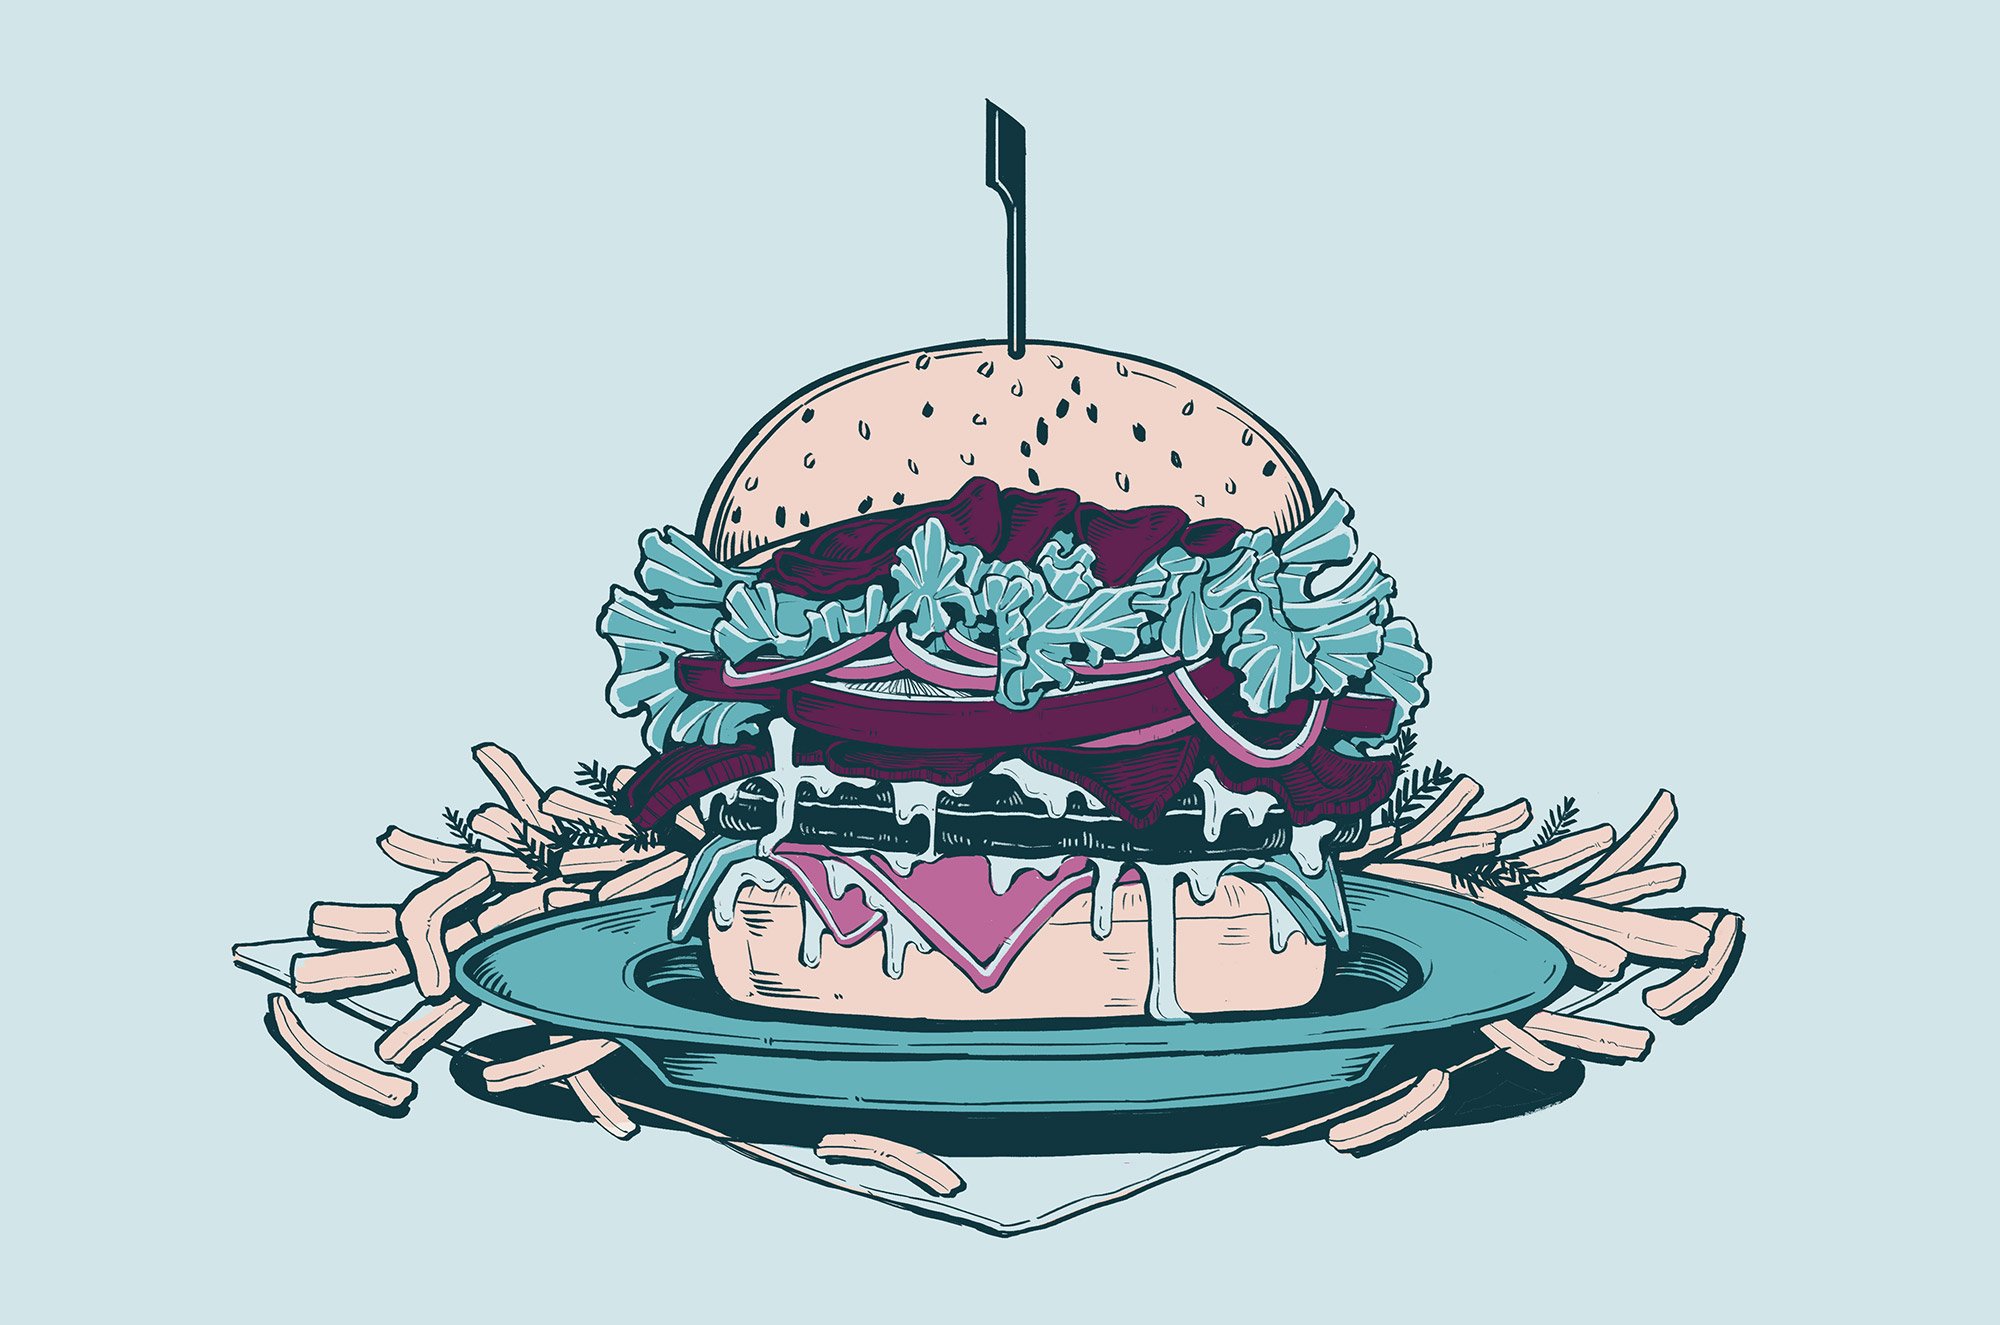 BSF--burger-duck-it-v2.jpg